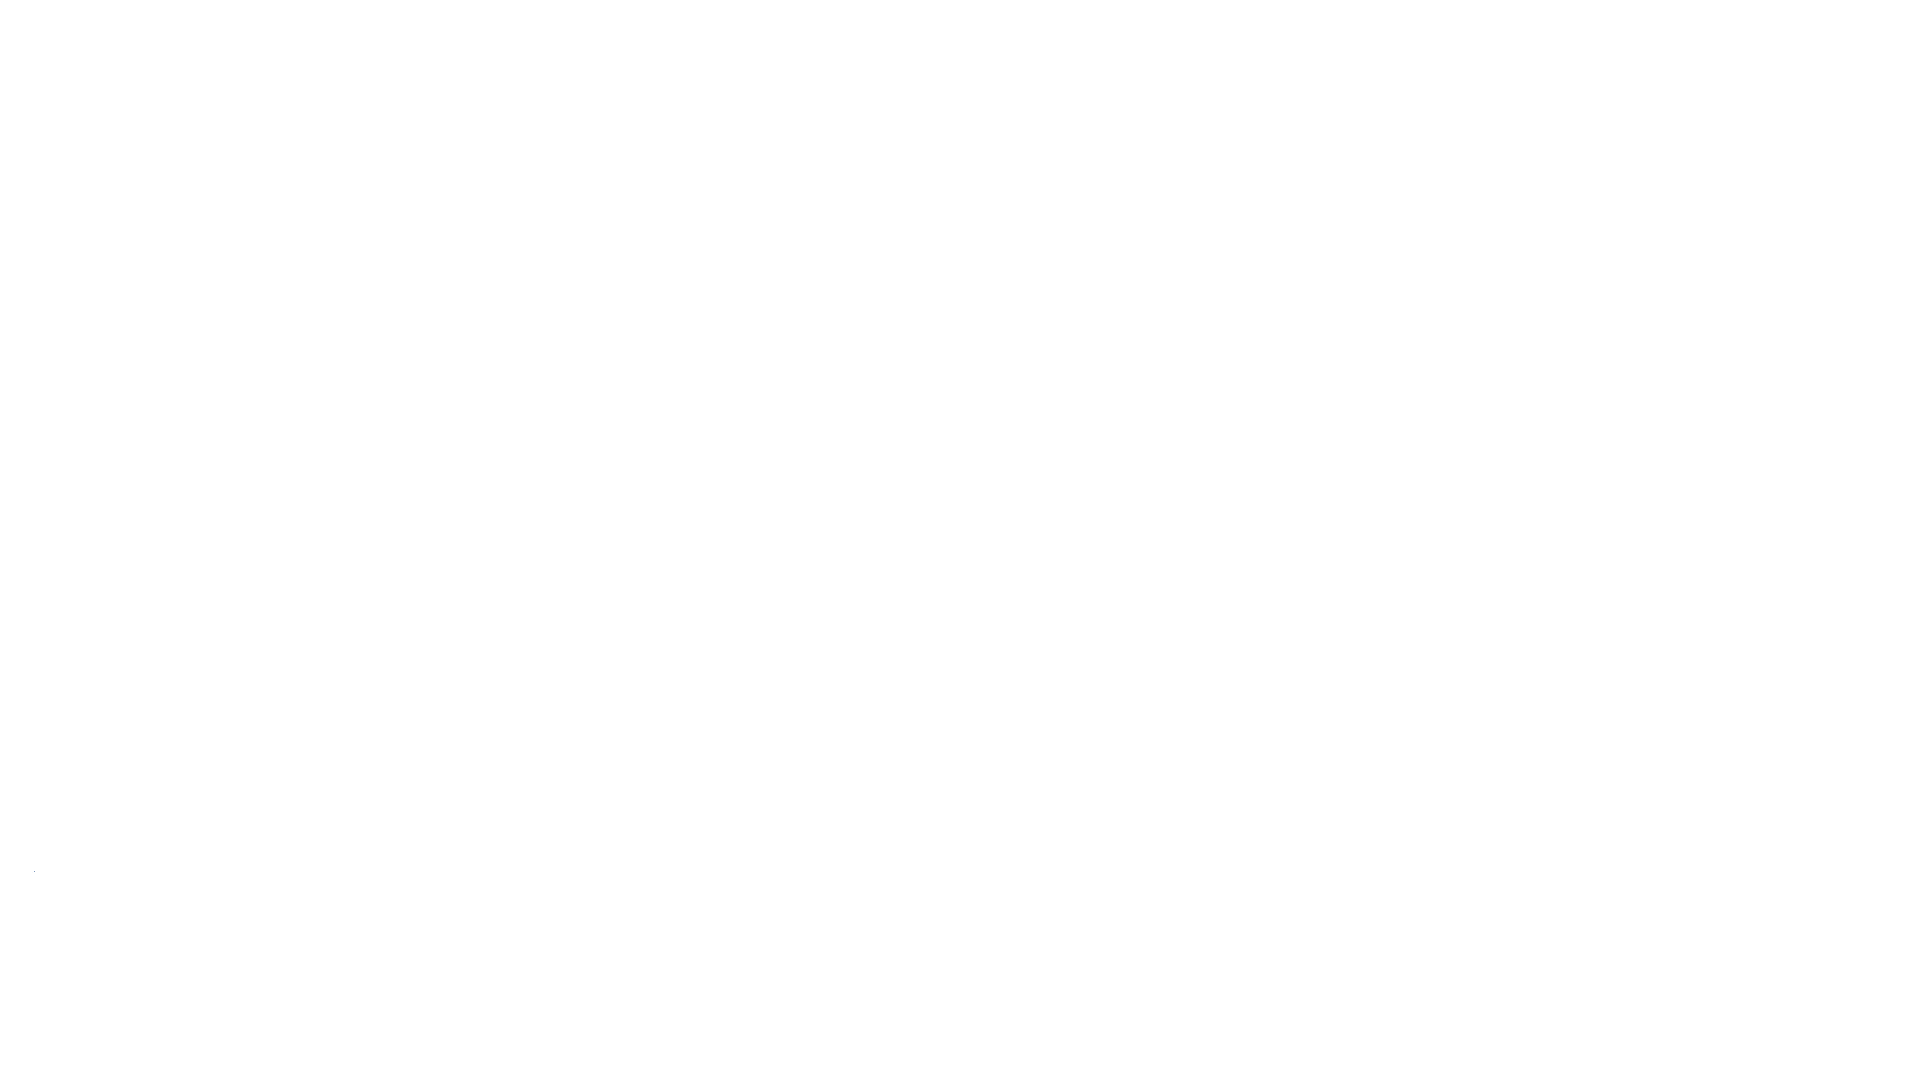 Medata